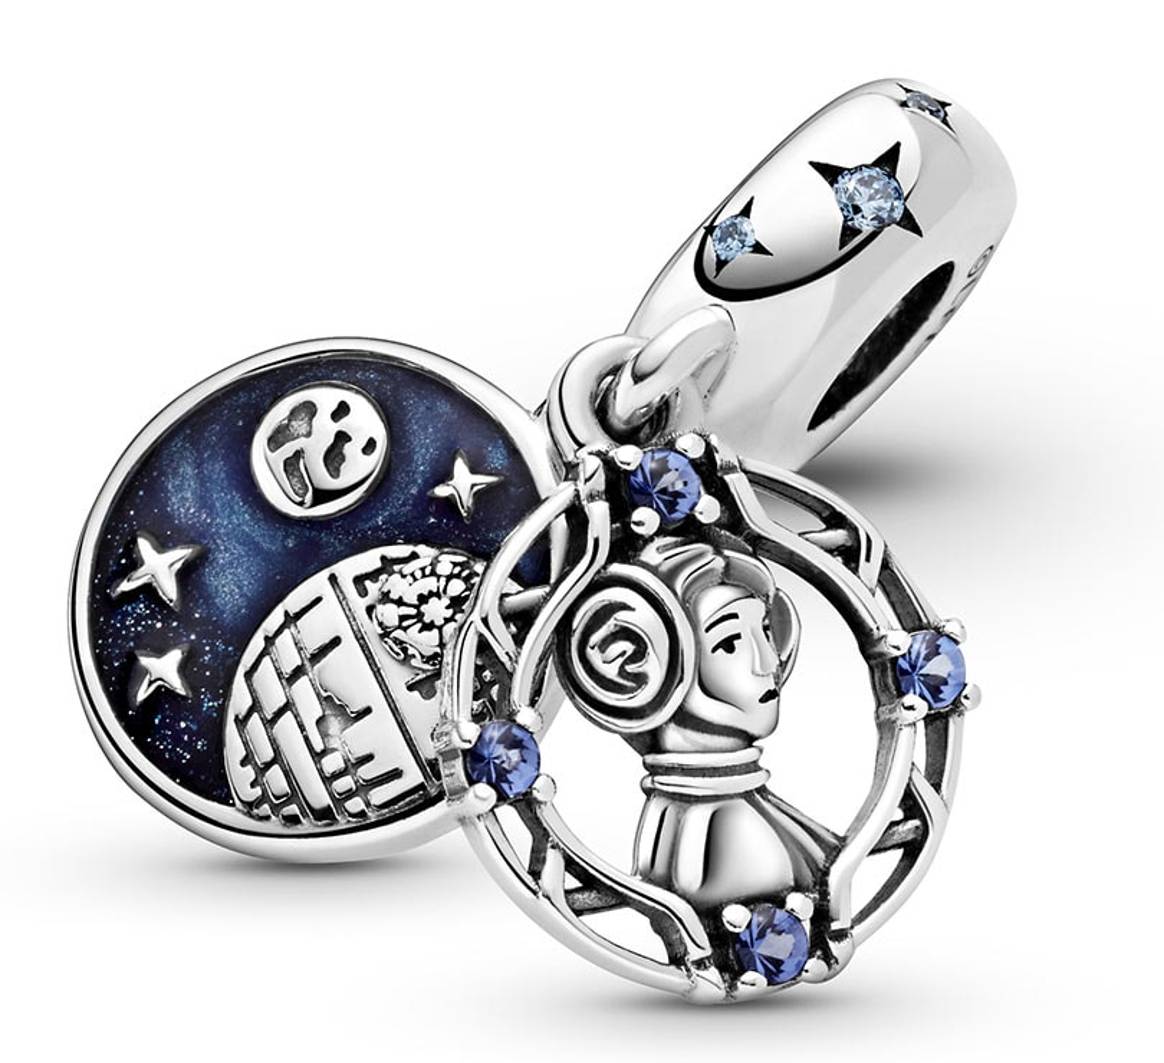 Pandora presenta la colección de joyas de Star Wars